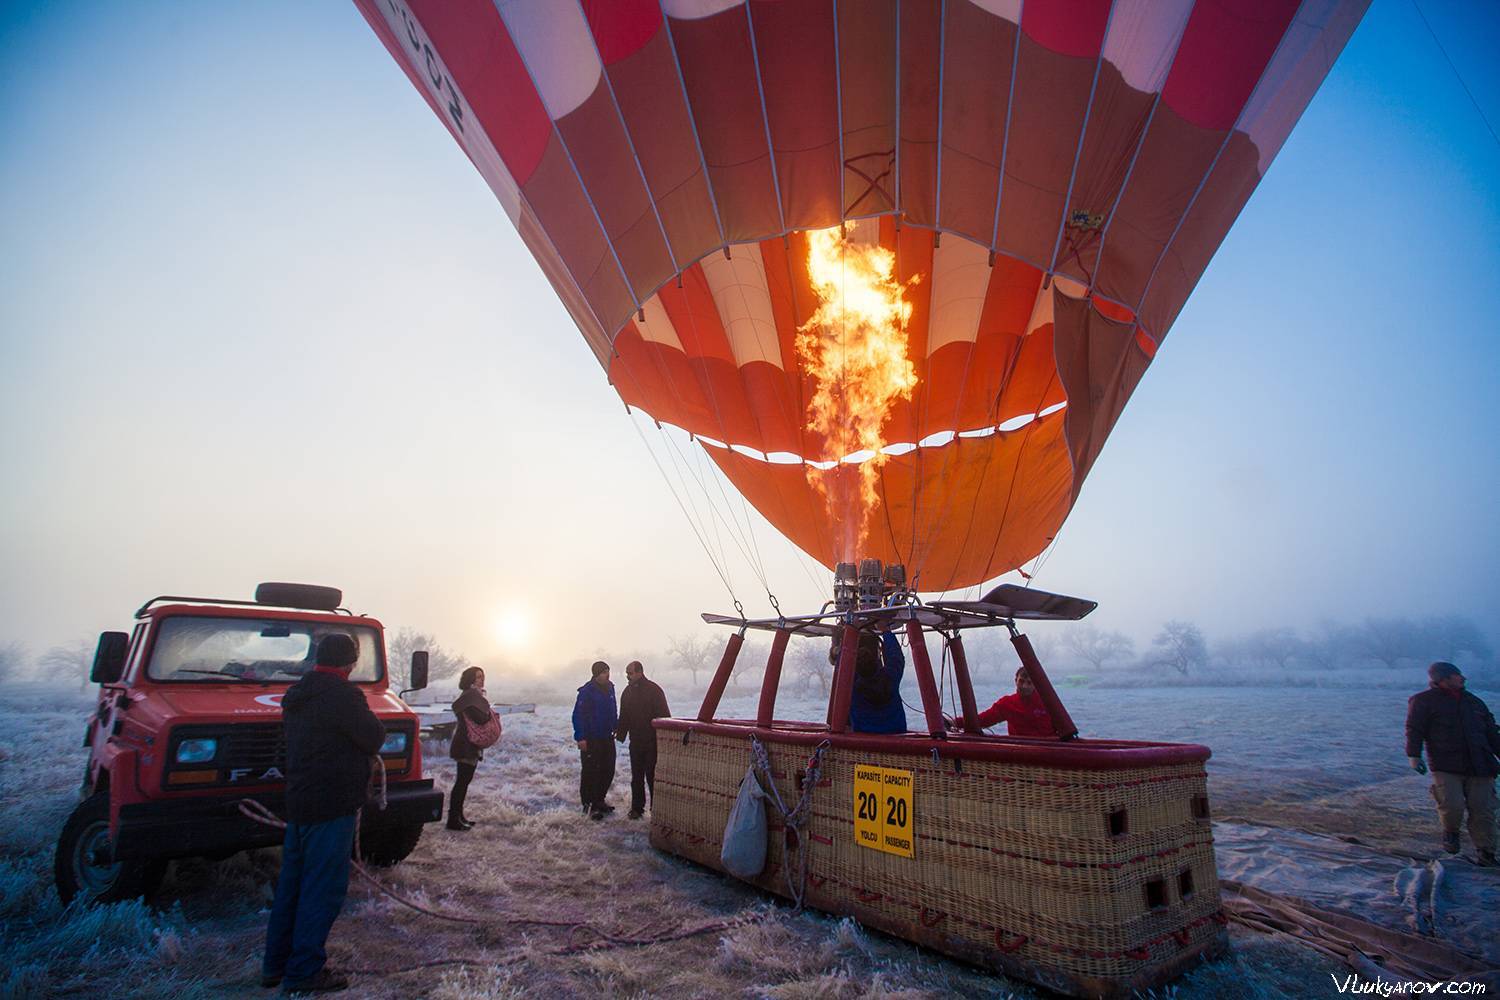 Полет на воздушном шаре как бизнес идея: сколько стоит полетать?